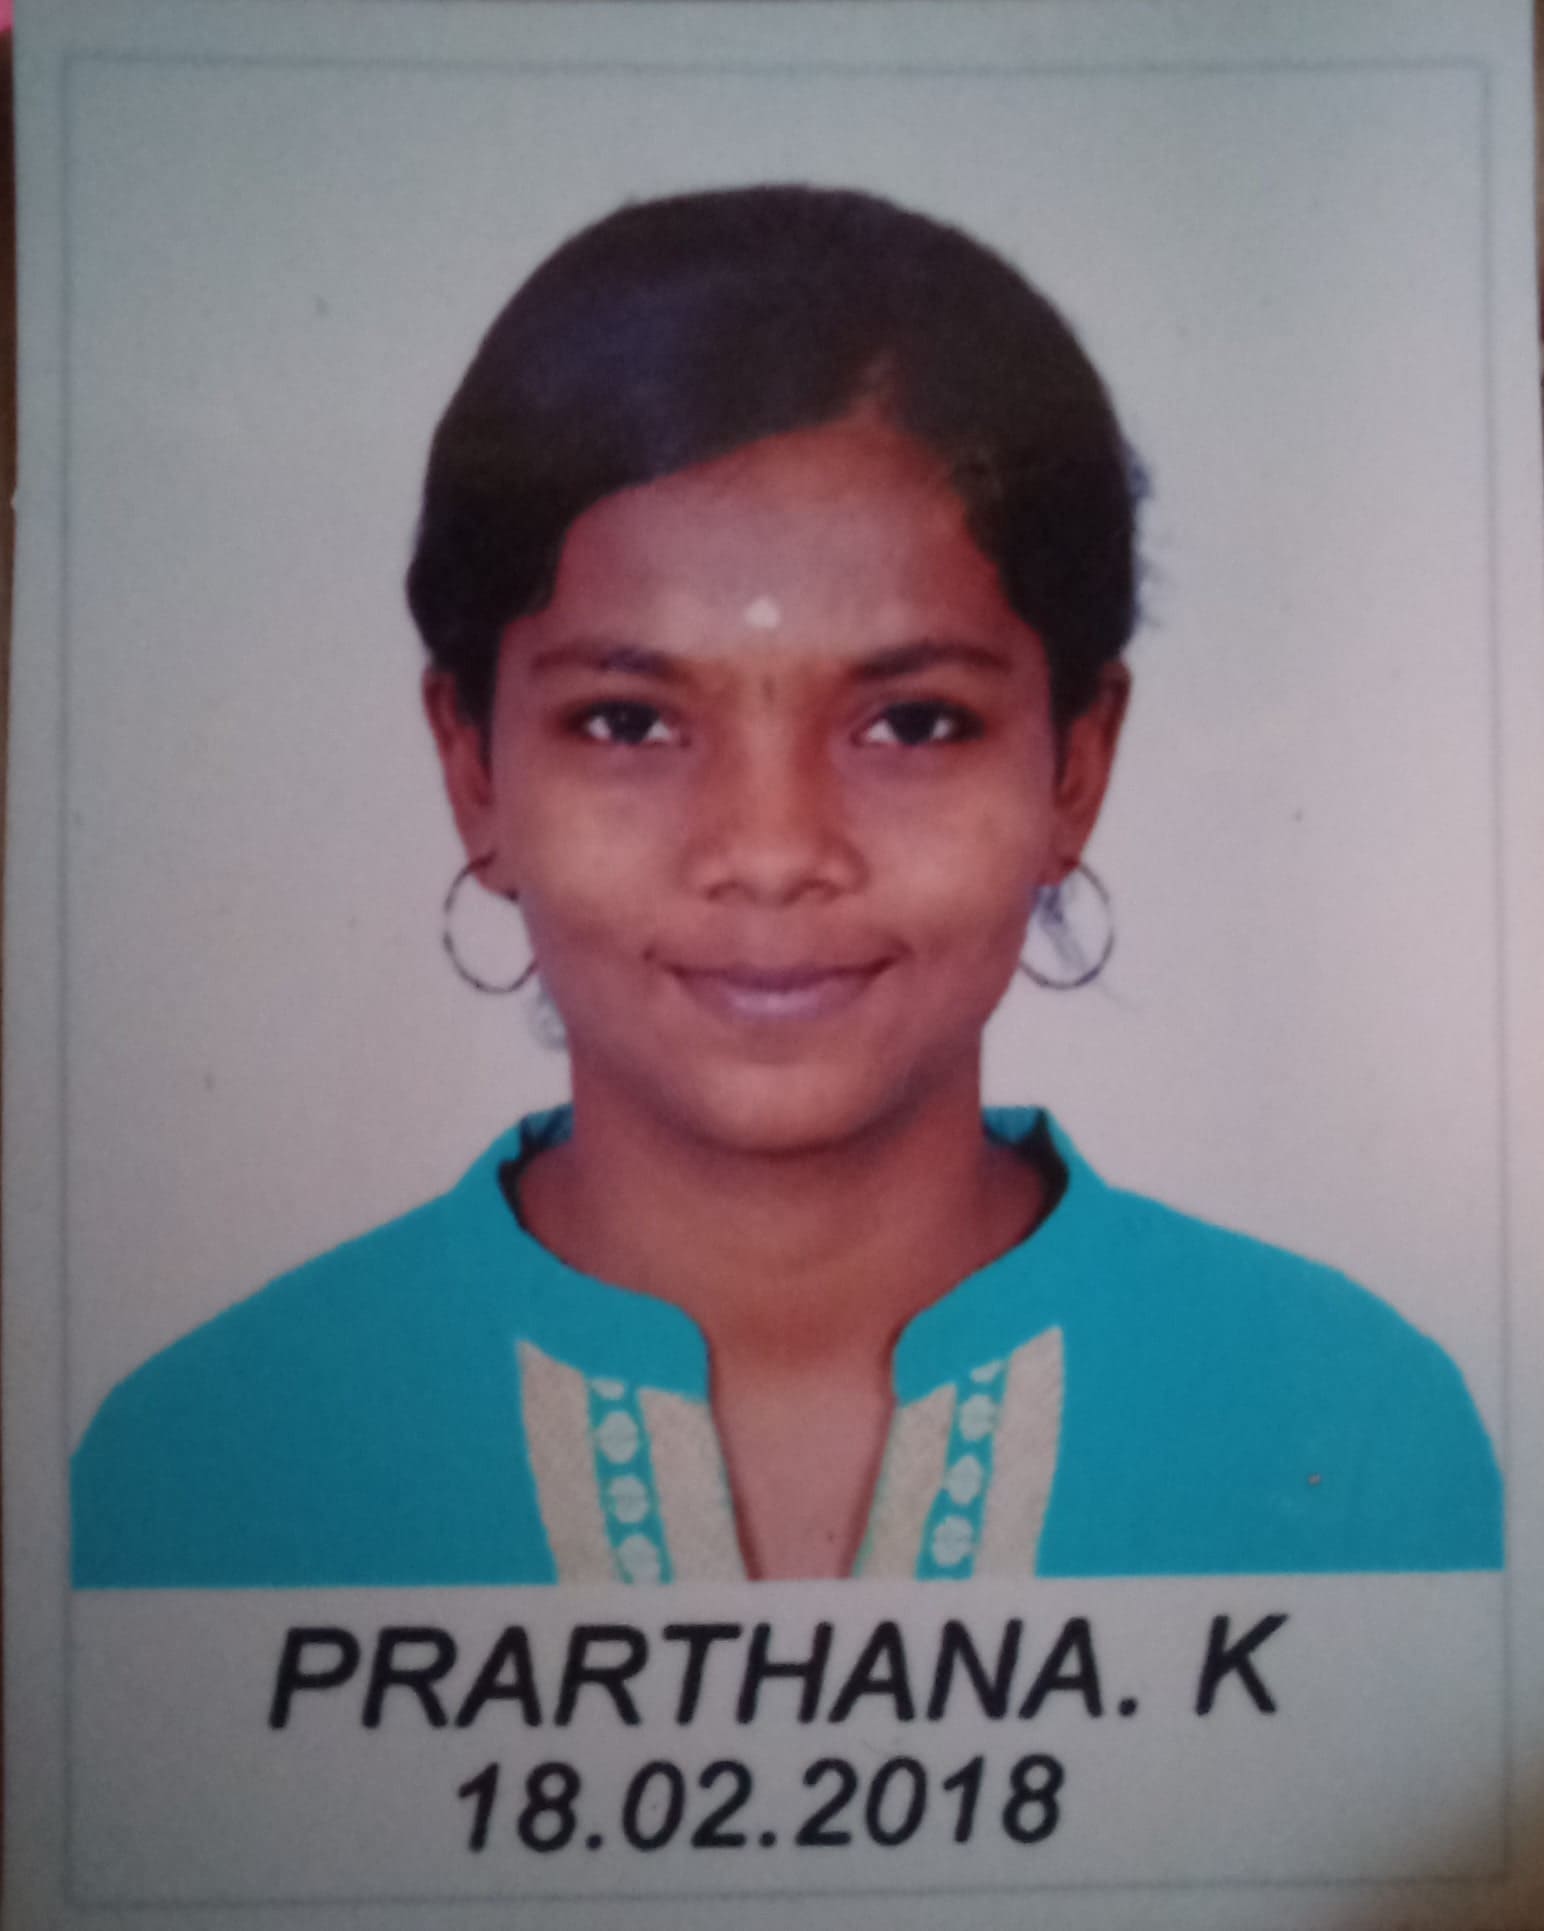 PRARTHANA K